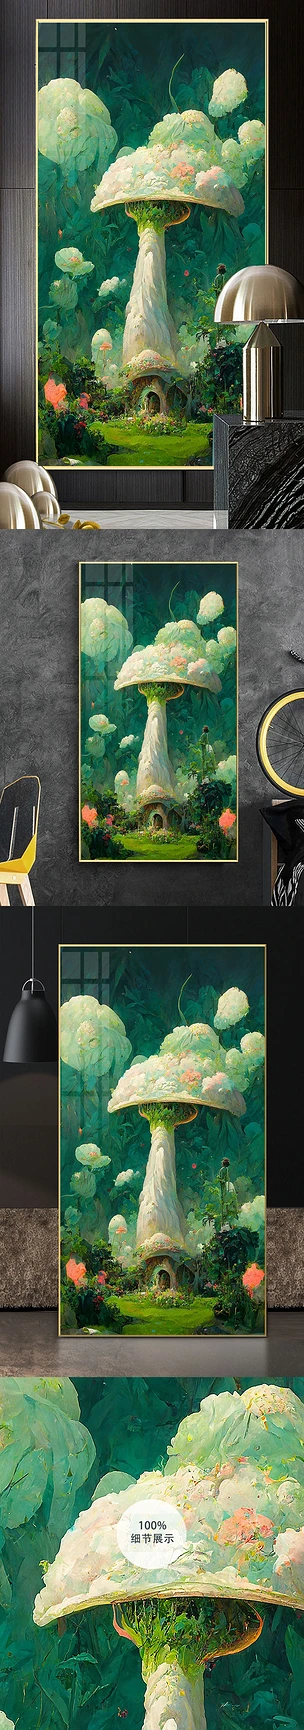 手绘油画梦幻童话森林蘑菇玄关装饰画3